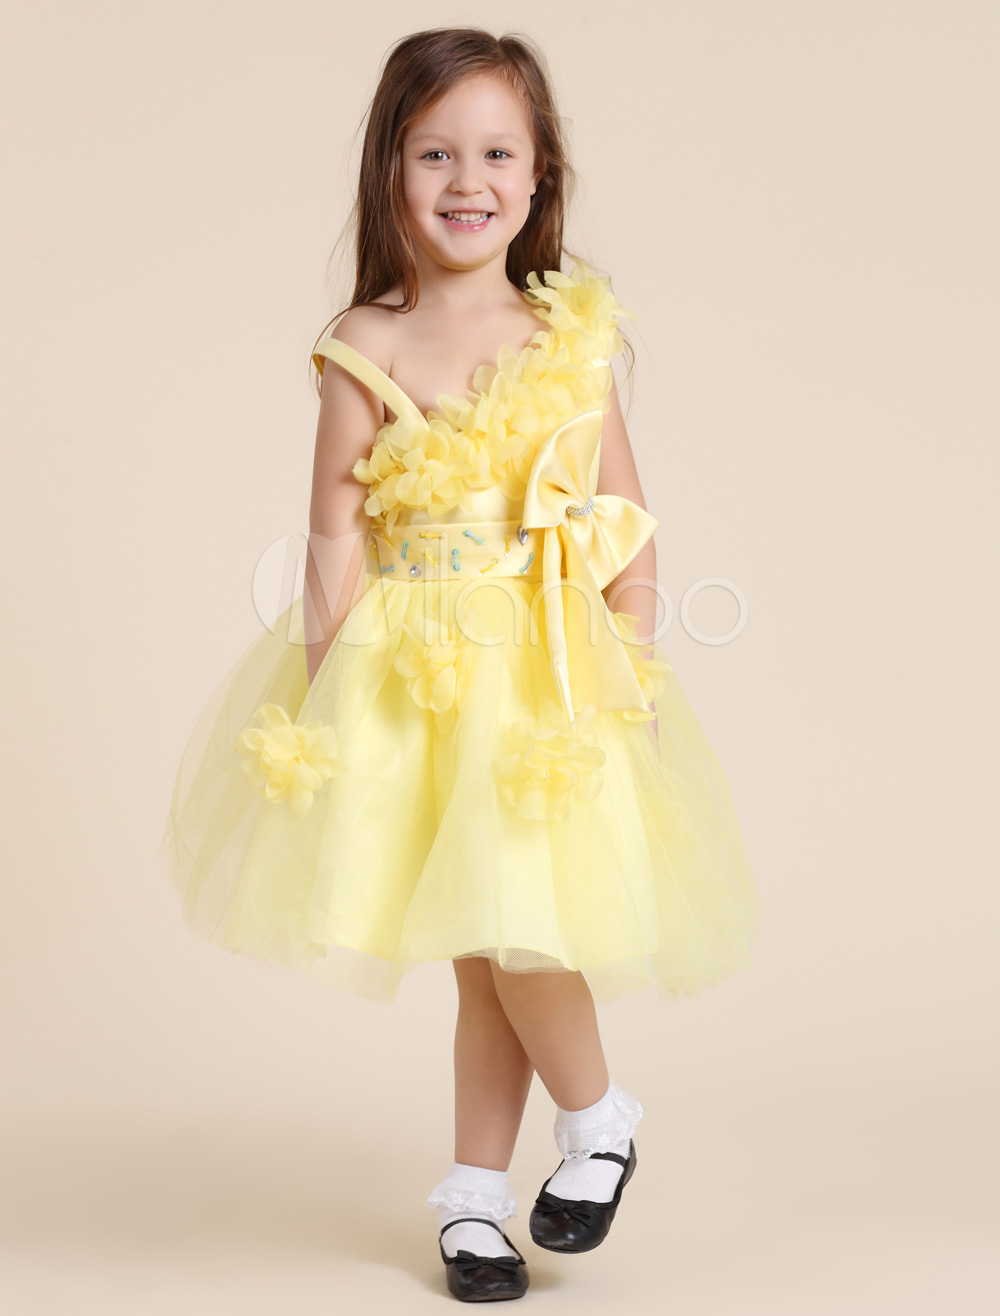 Daffodil Flower Girl Dresses 